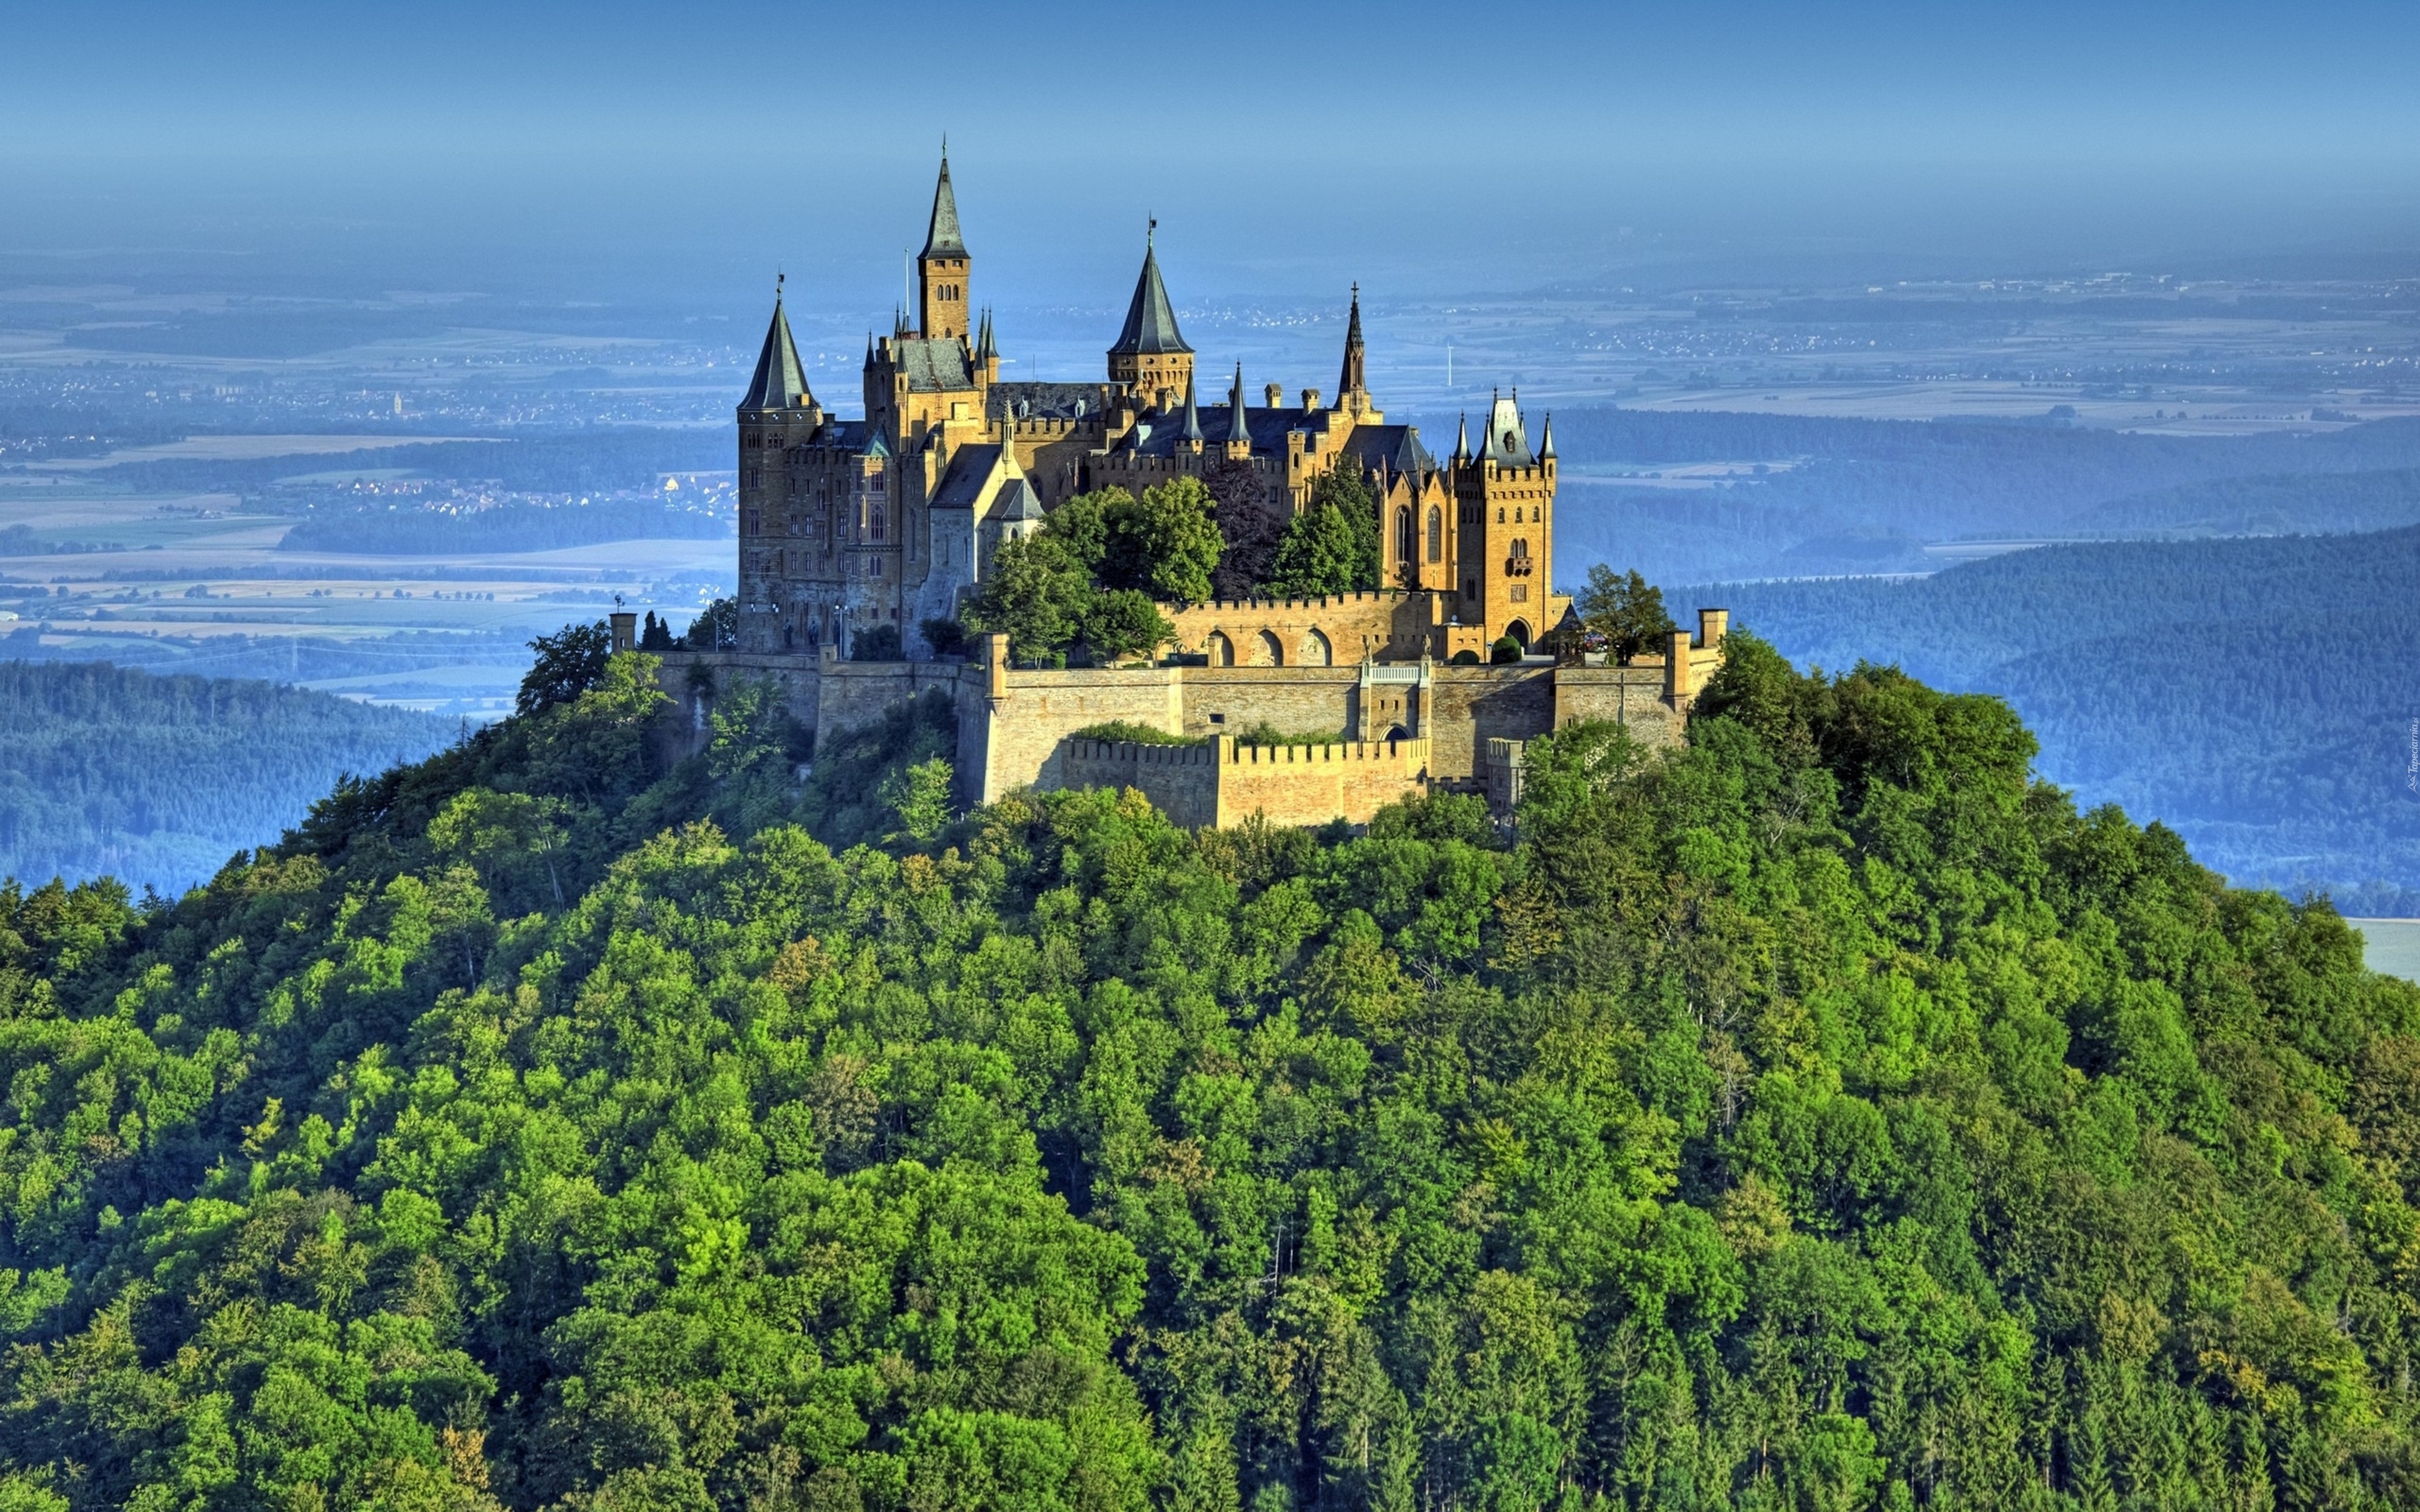 Zamek, Hohenzollern, Niemcy, Wzgórze